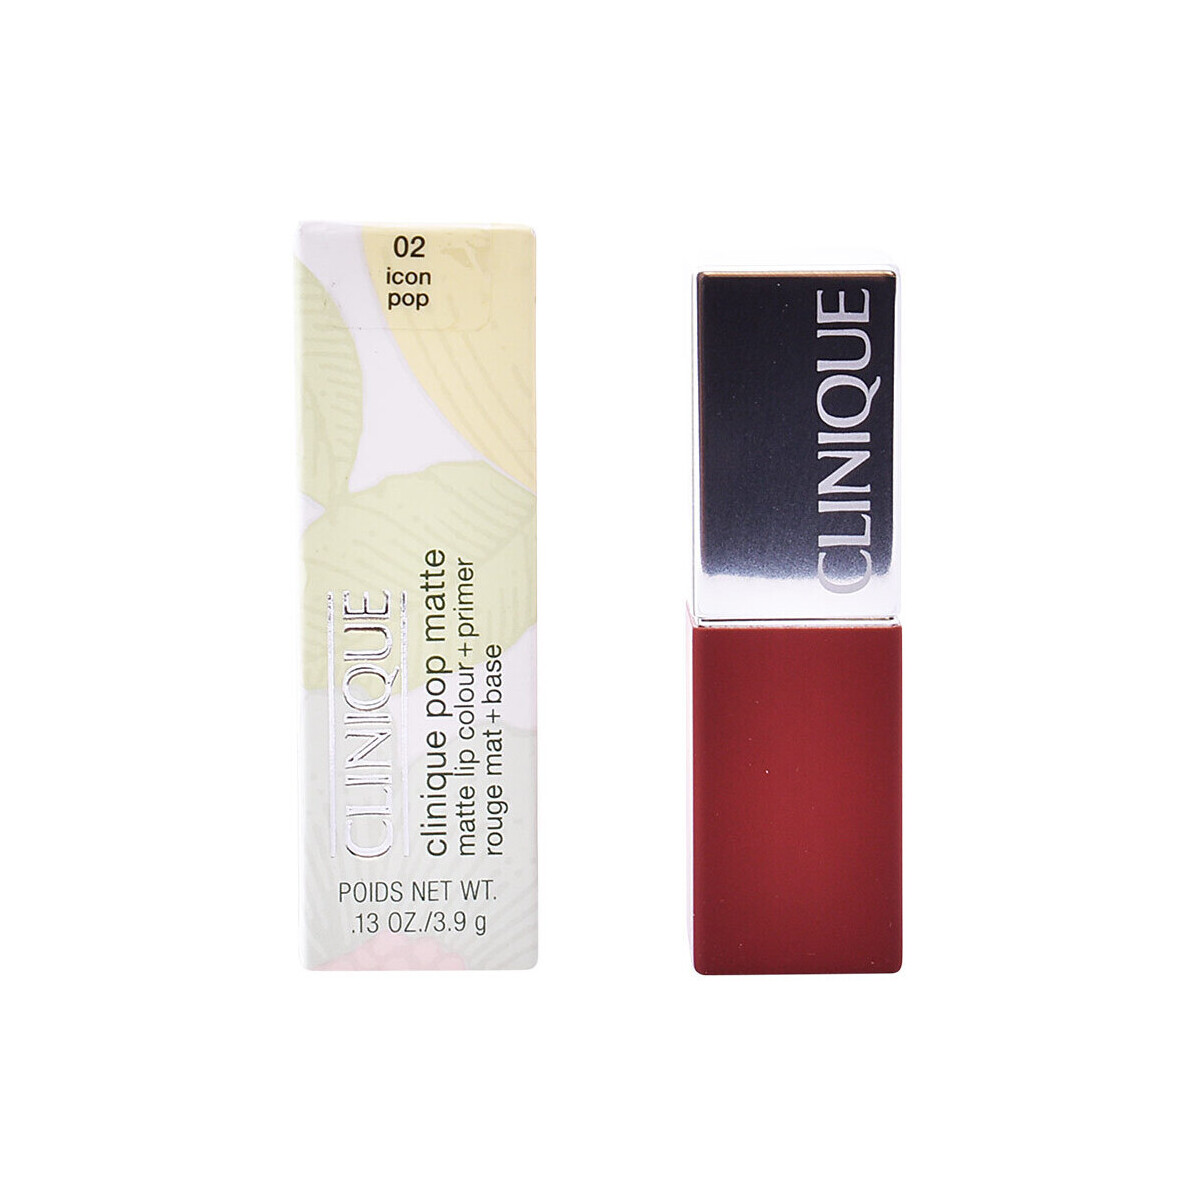 Beauty Damen Lippenstift Clinique Pop Matte Lip Color + Primer 02-icon Pop 